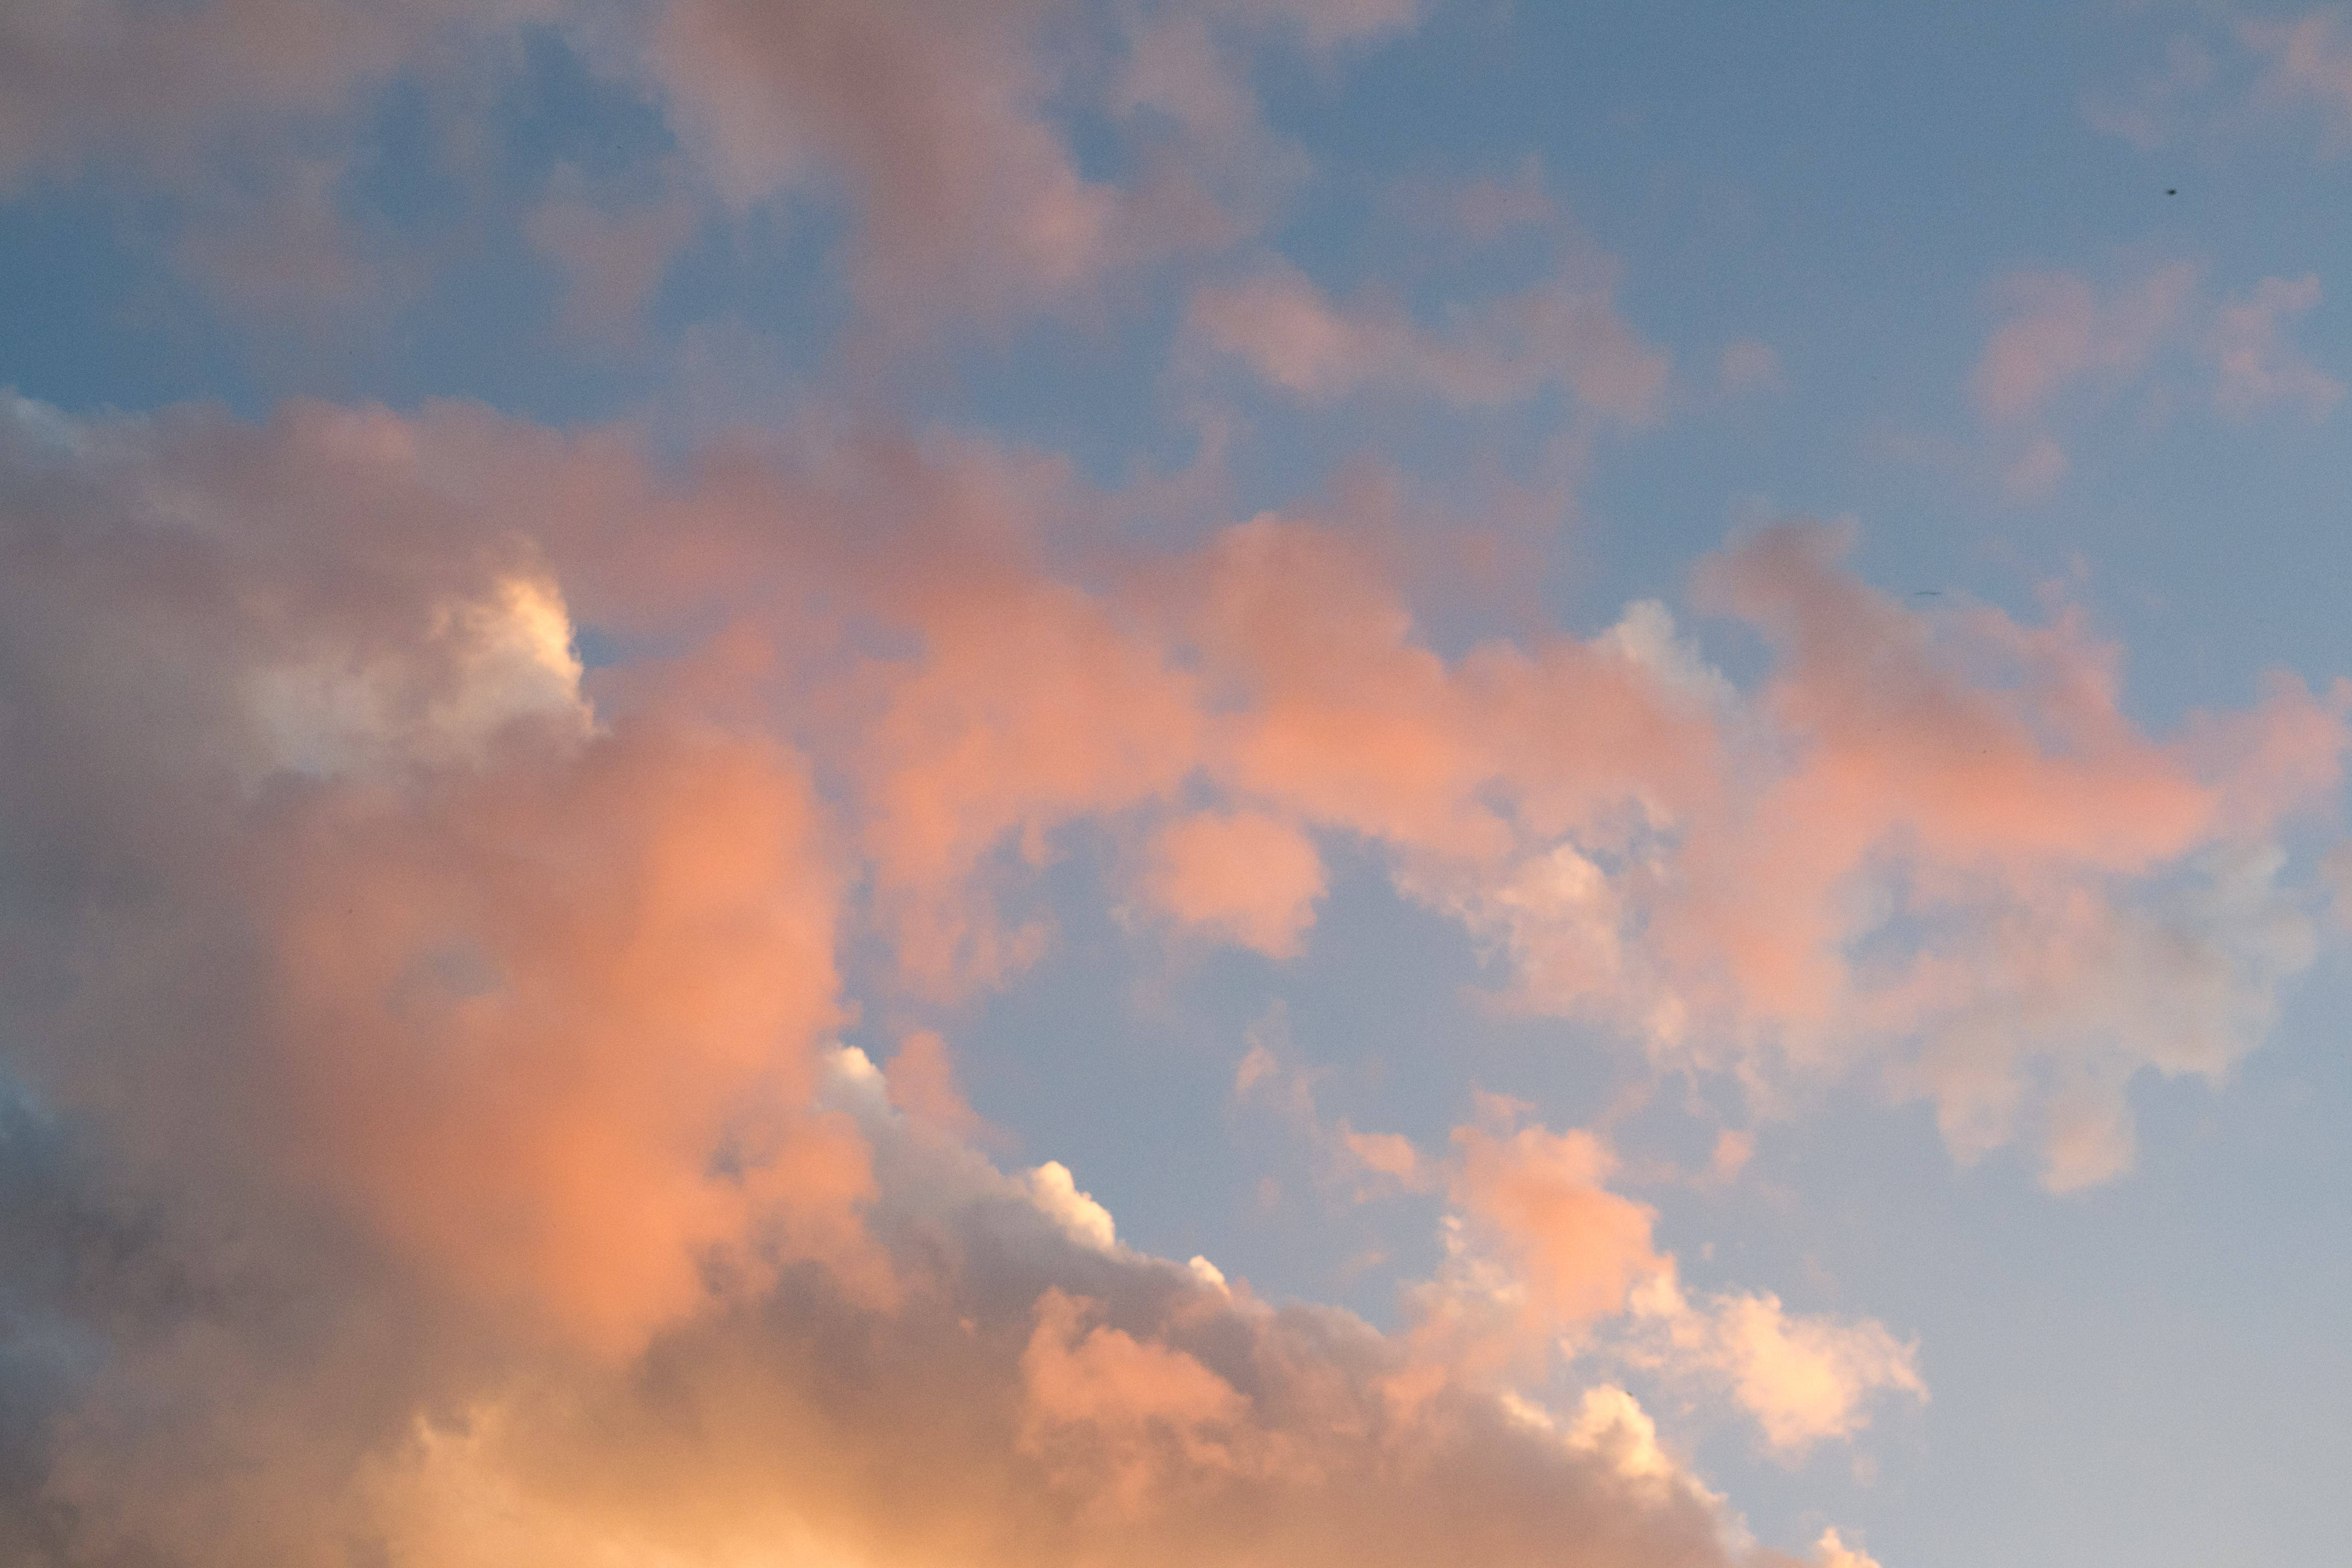 Evening Clouds by merksch on DeviantArt